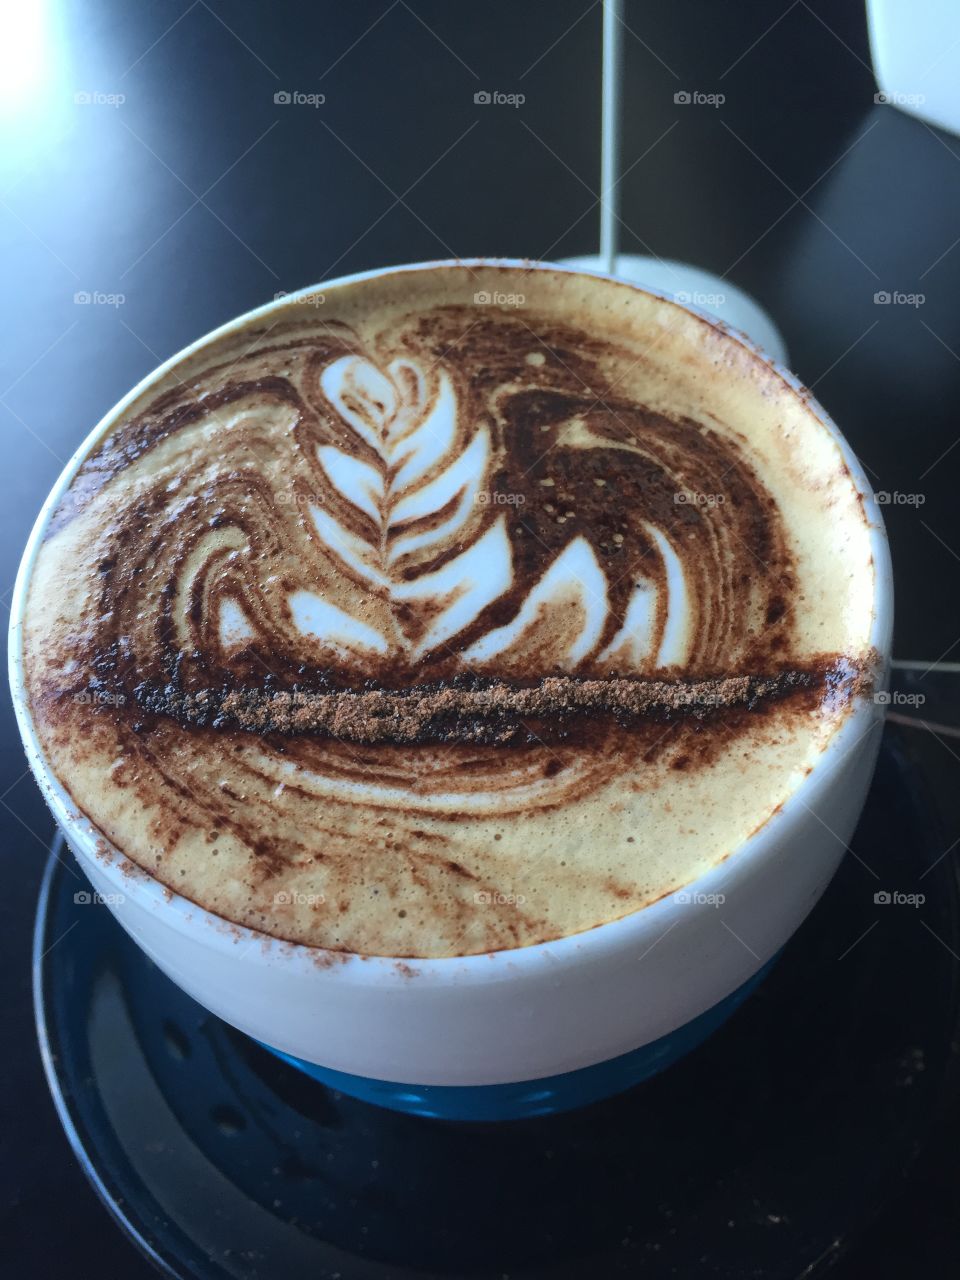 Cappuccino designs 